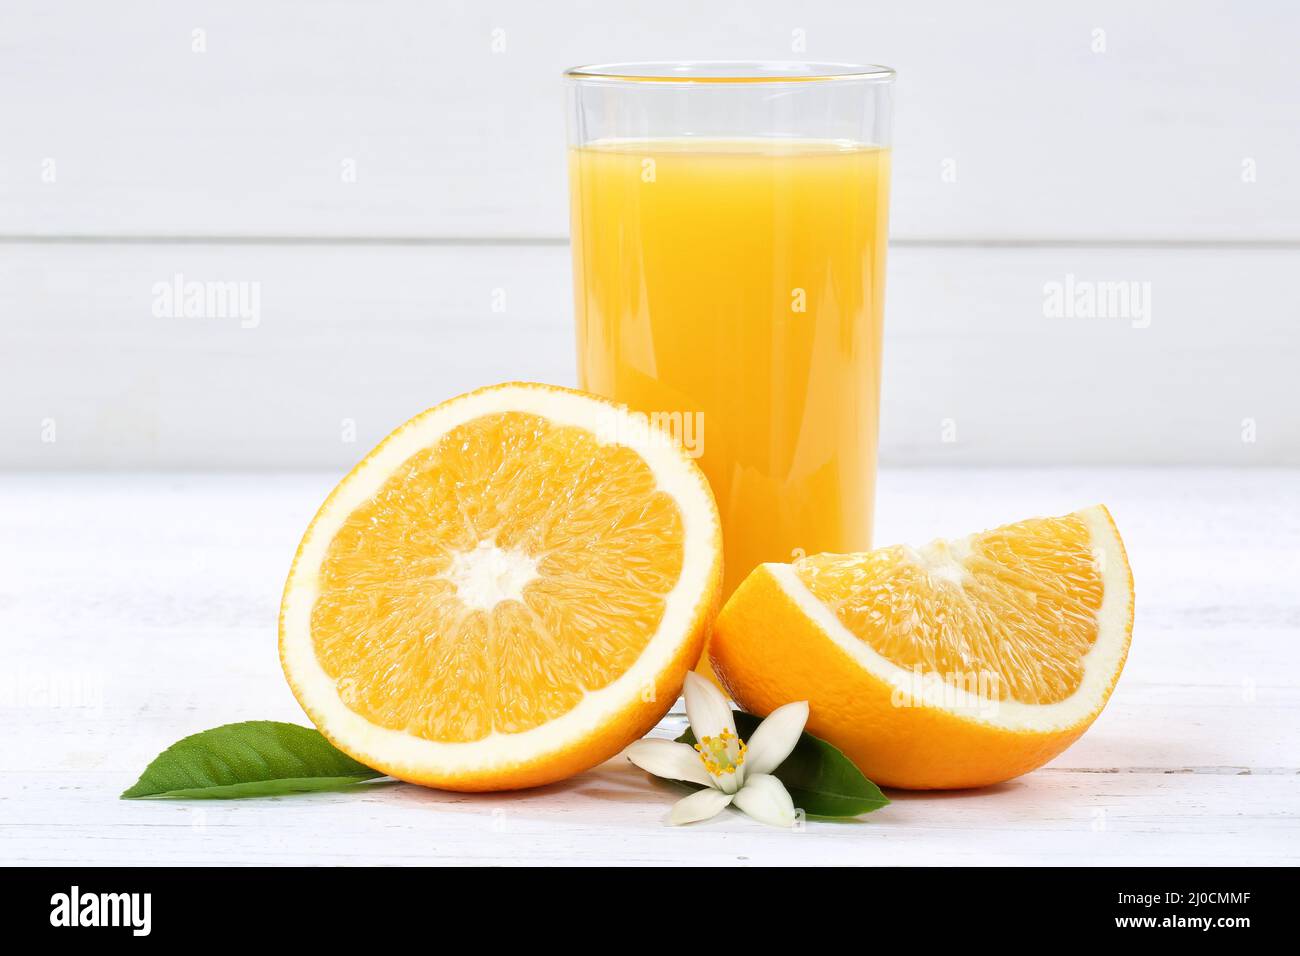 Succo d'arancia succo d'arancia succo d'arancia succo d'arancia frutta frutta frutta frutta Foto Stock